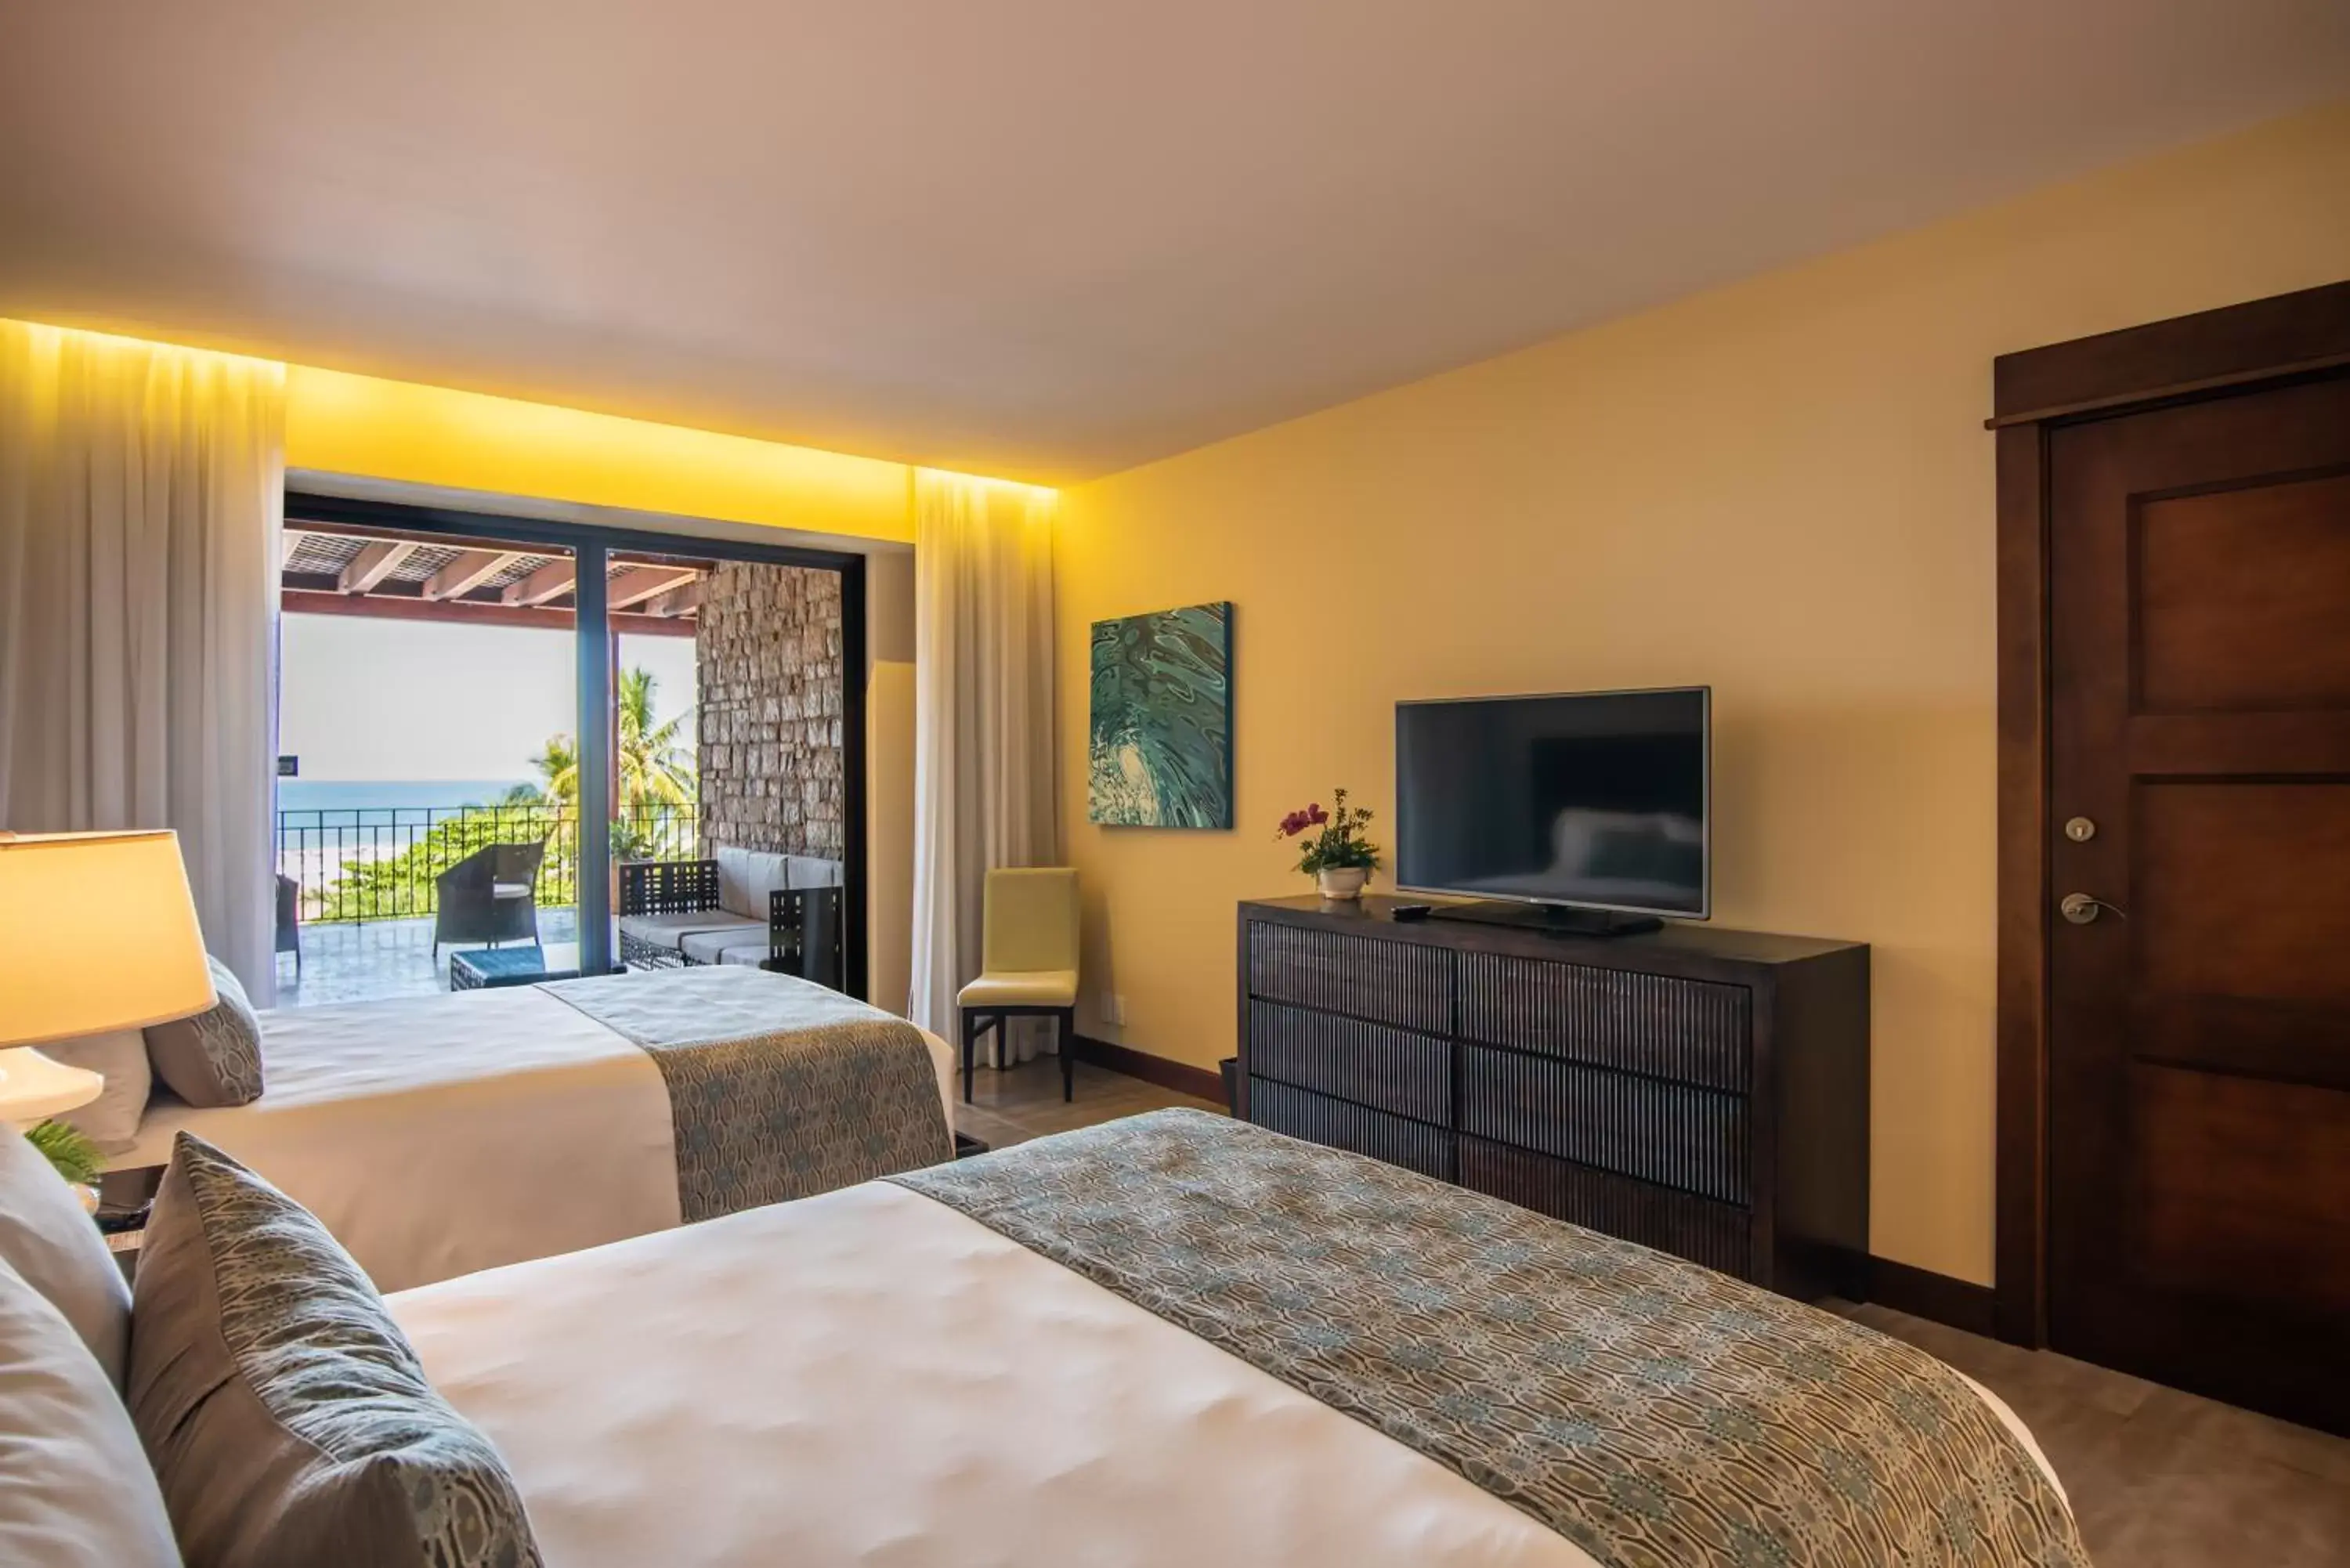 Bedroom, TV/Entertainment Center in Crocs Resort & Casino